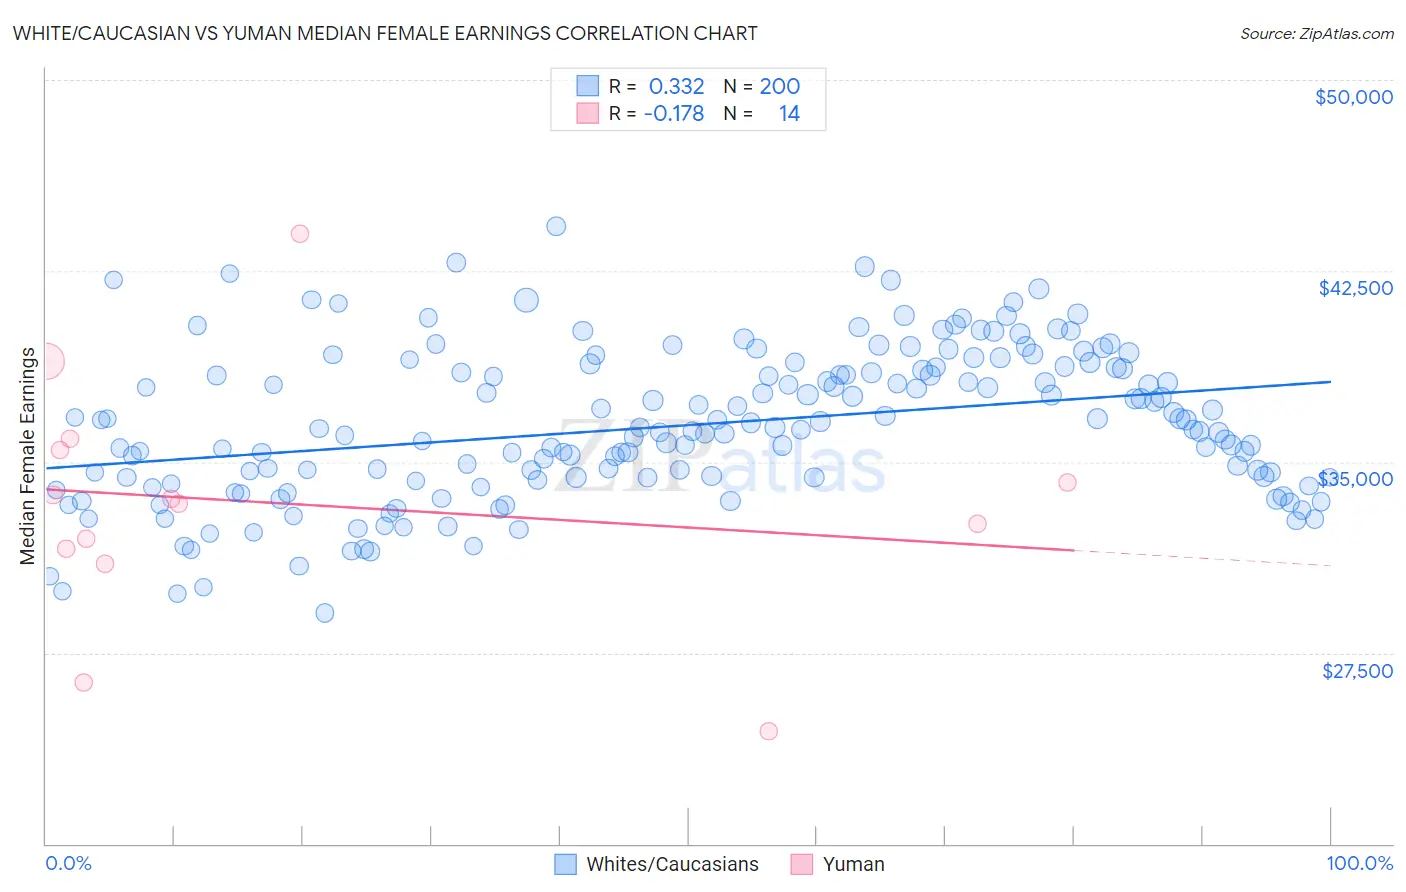 White/Caucasian vs Yuman Median Female Earnings